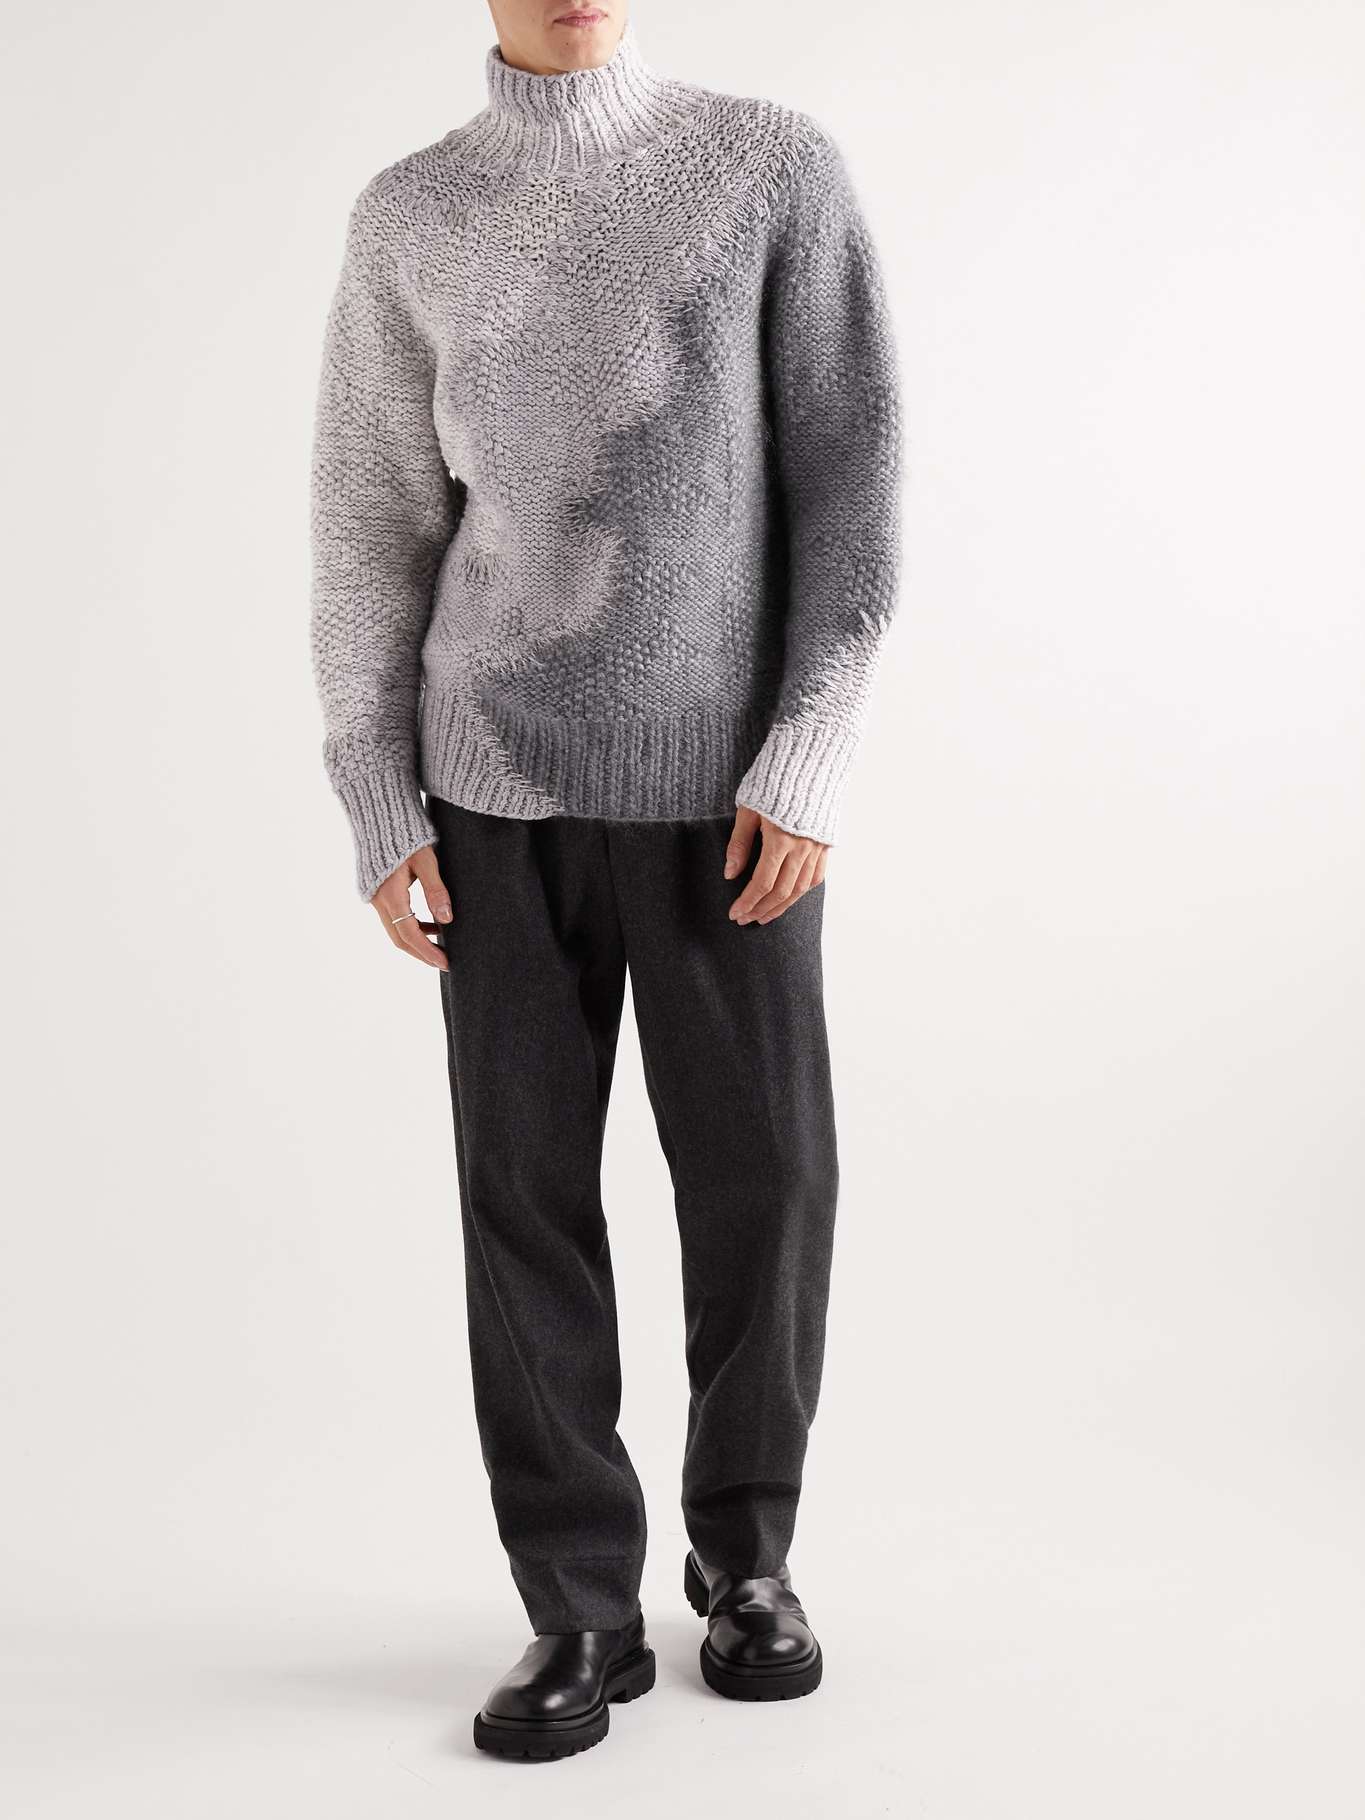 ZEGNA Cashmere-Blend Rollneck Sweater for Men | MR PORTER